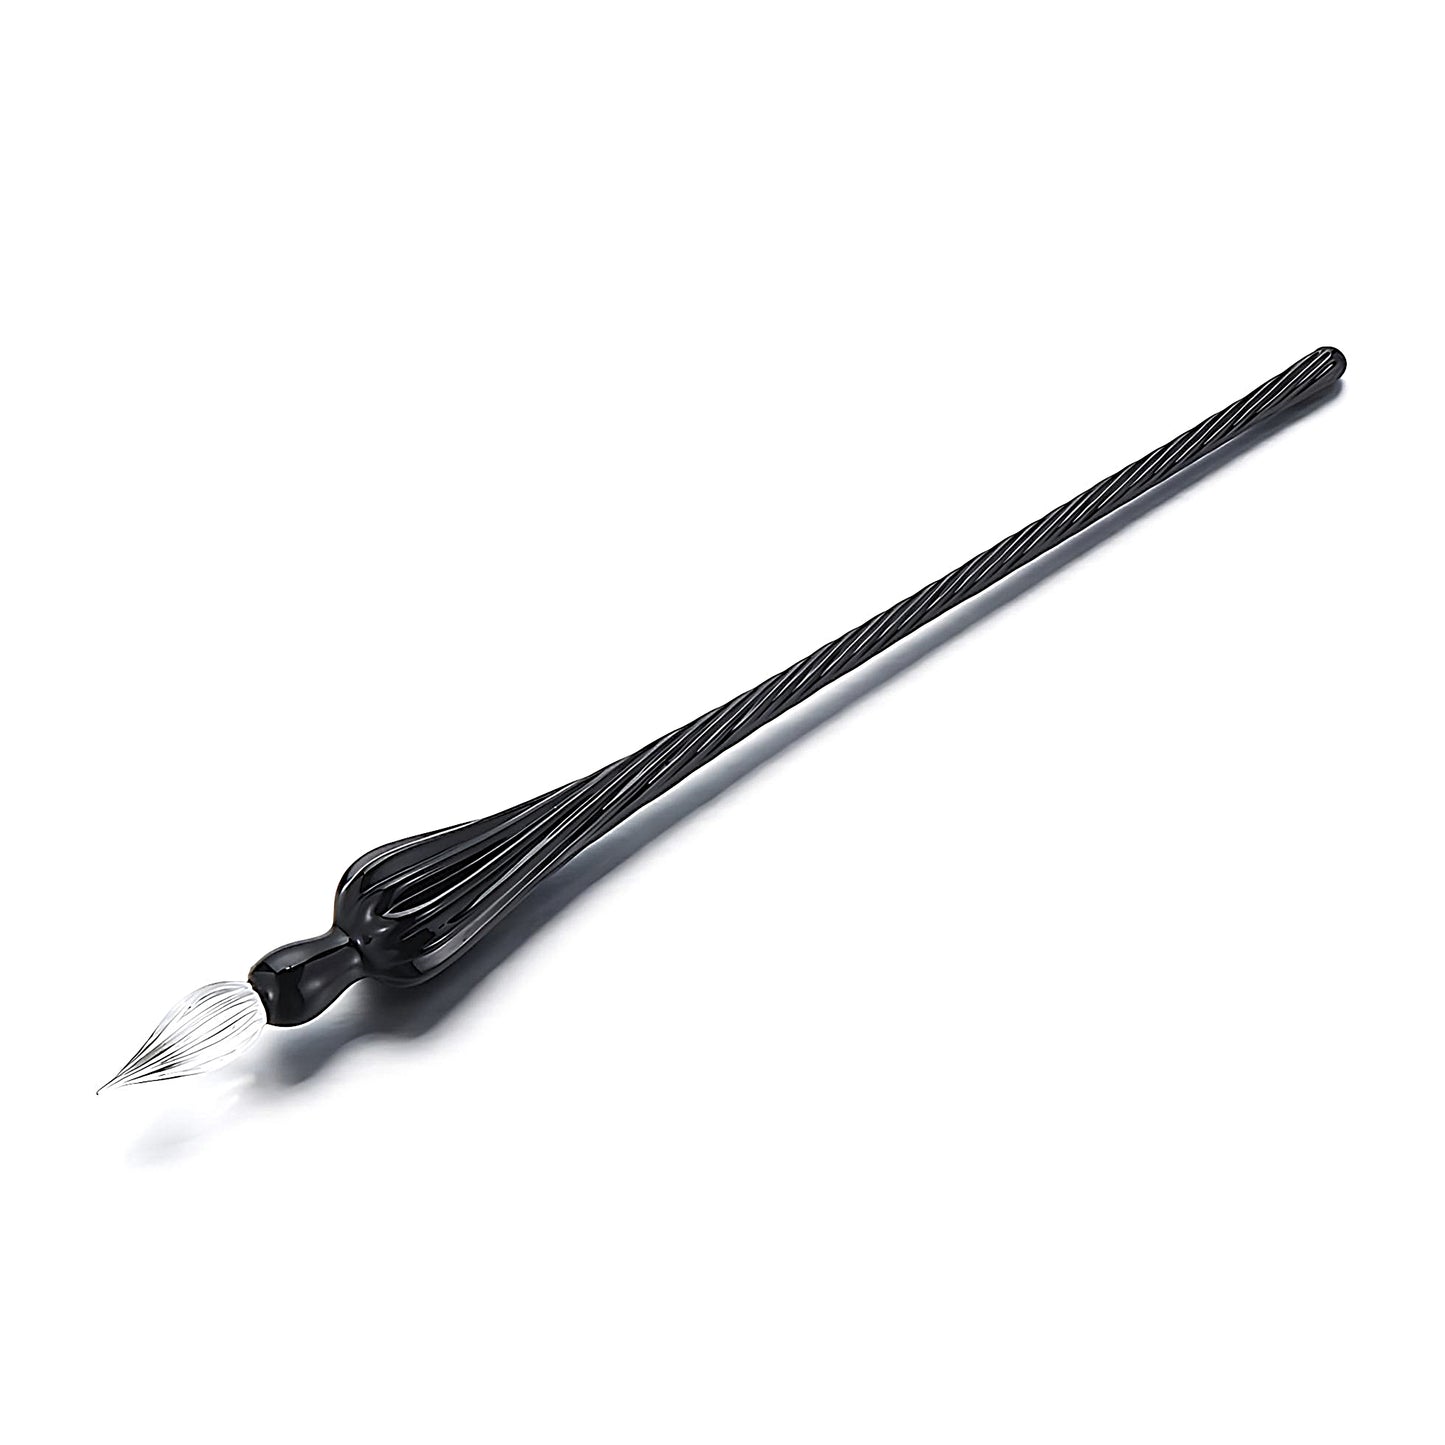 a black glass dip pen